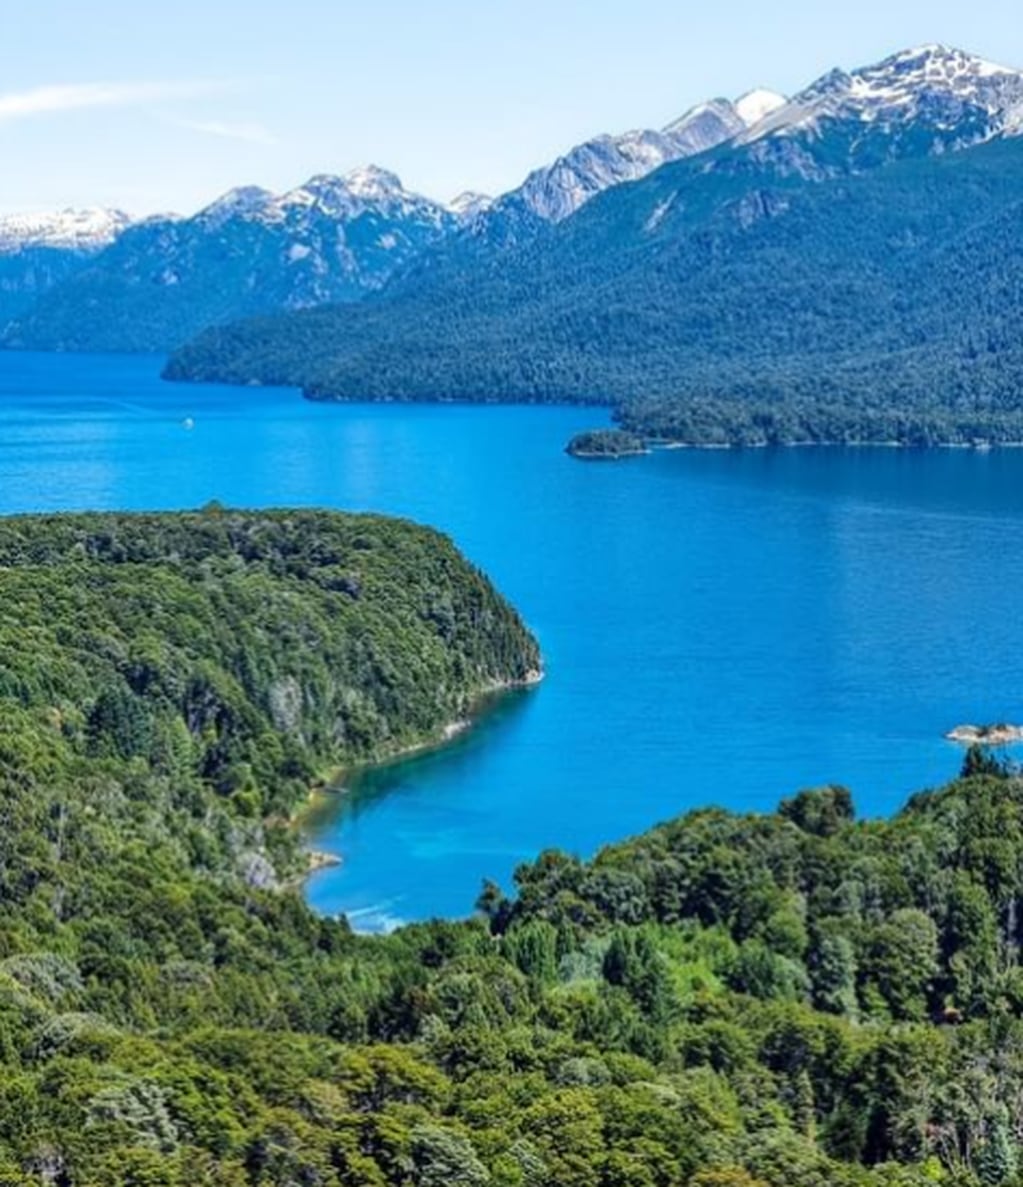 Modo vacaciones: 5 actividades imperdibles para disfrutar del verano de Bariloche en 3 días. Foto: Instagram @barilochear